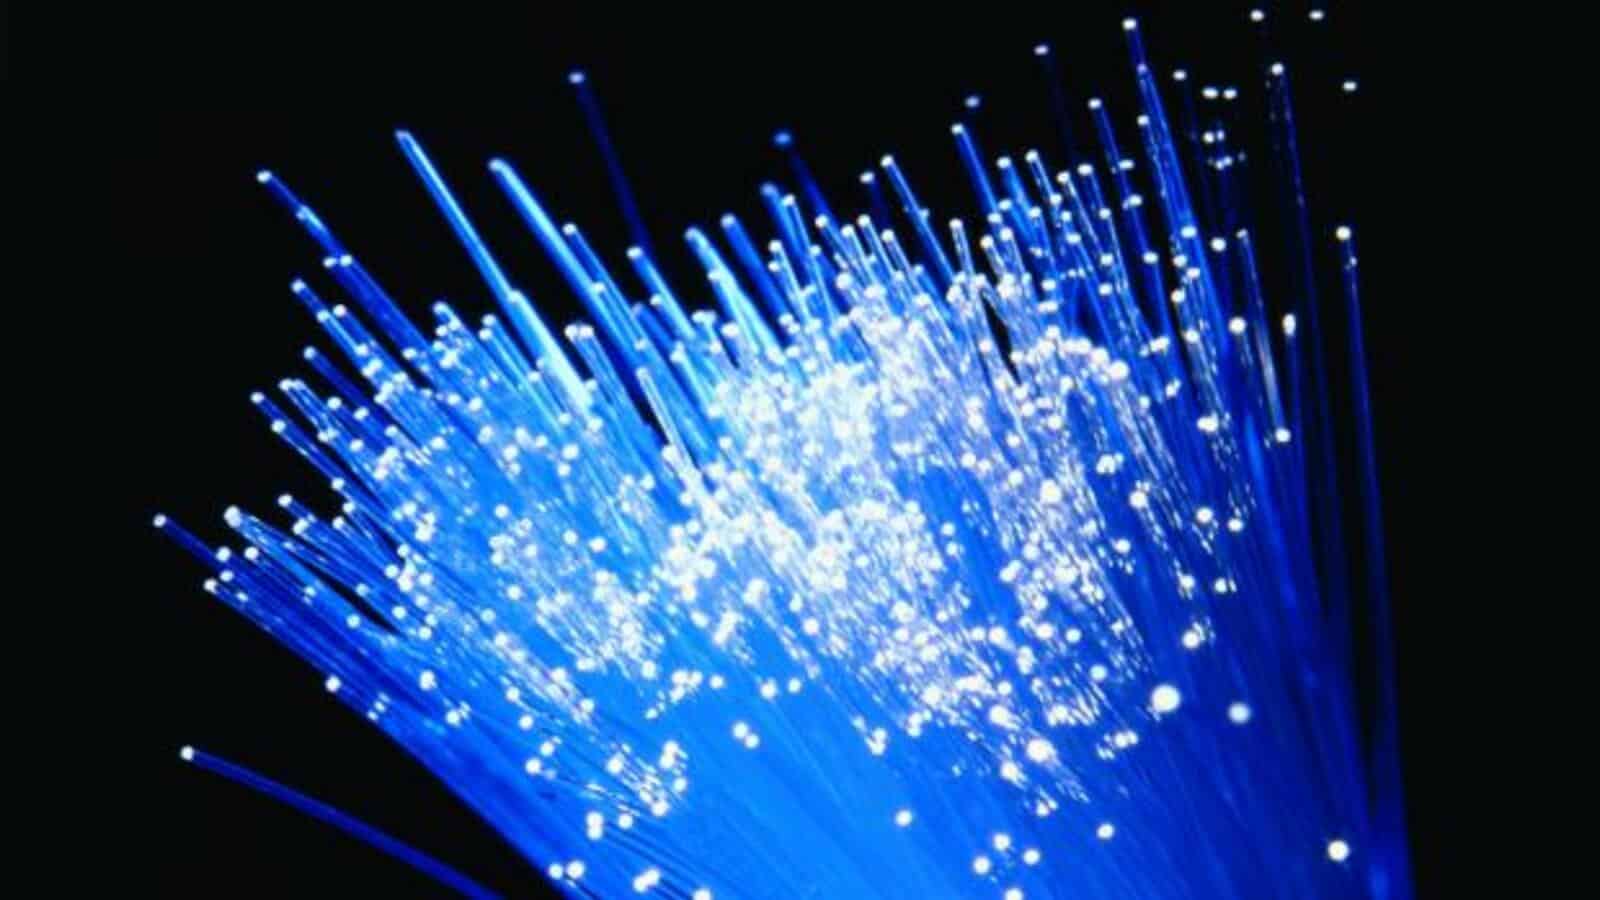 broadband cables